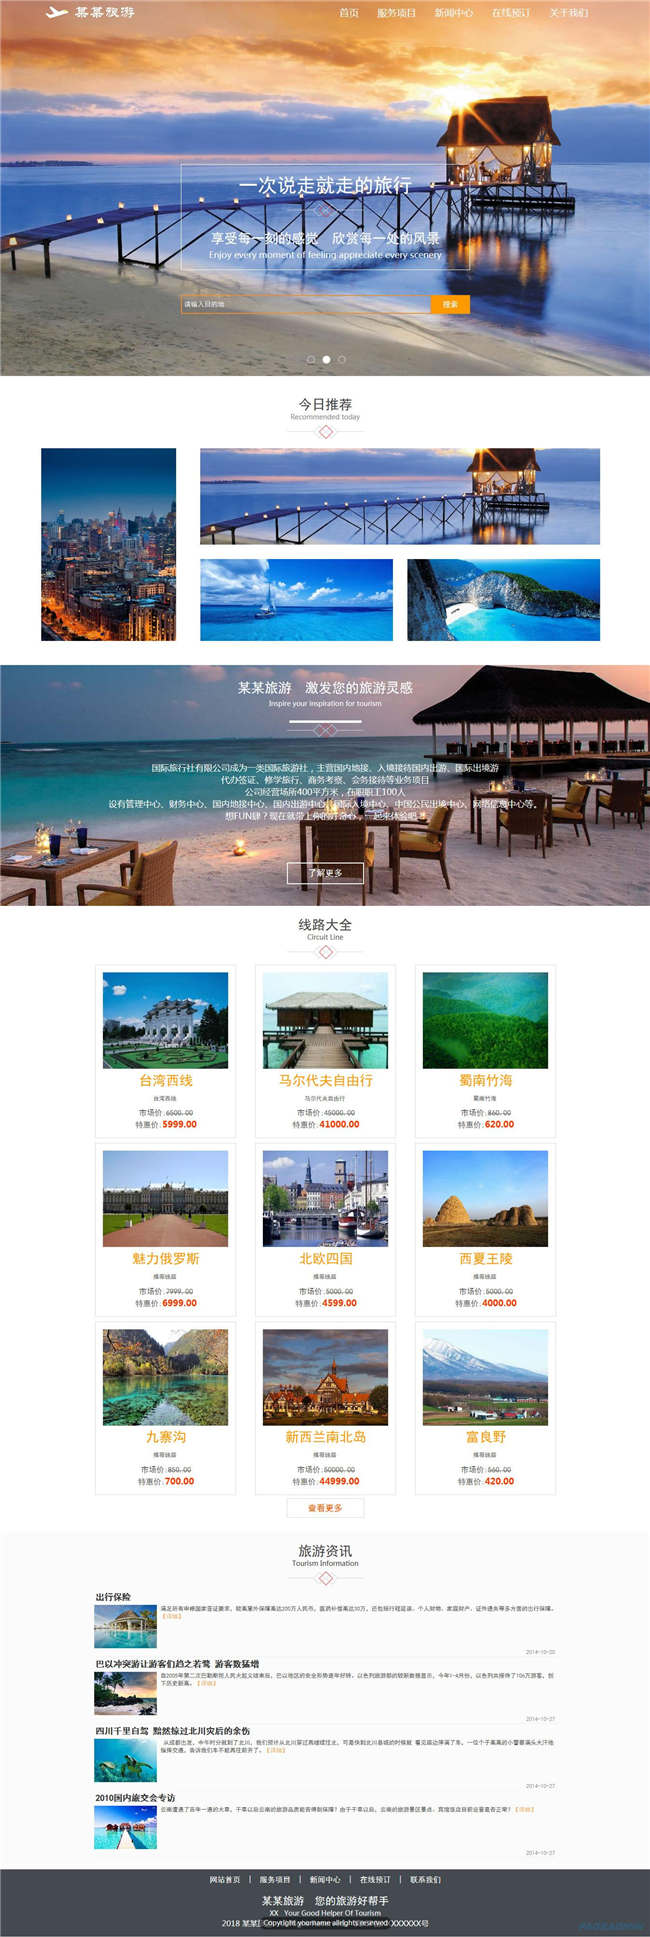 旅行社旅游风景票务网站WordPress模板带手机端演示图